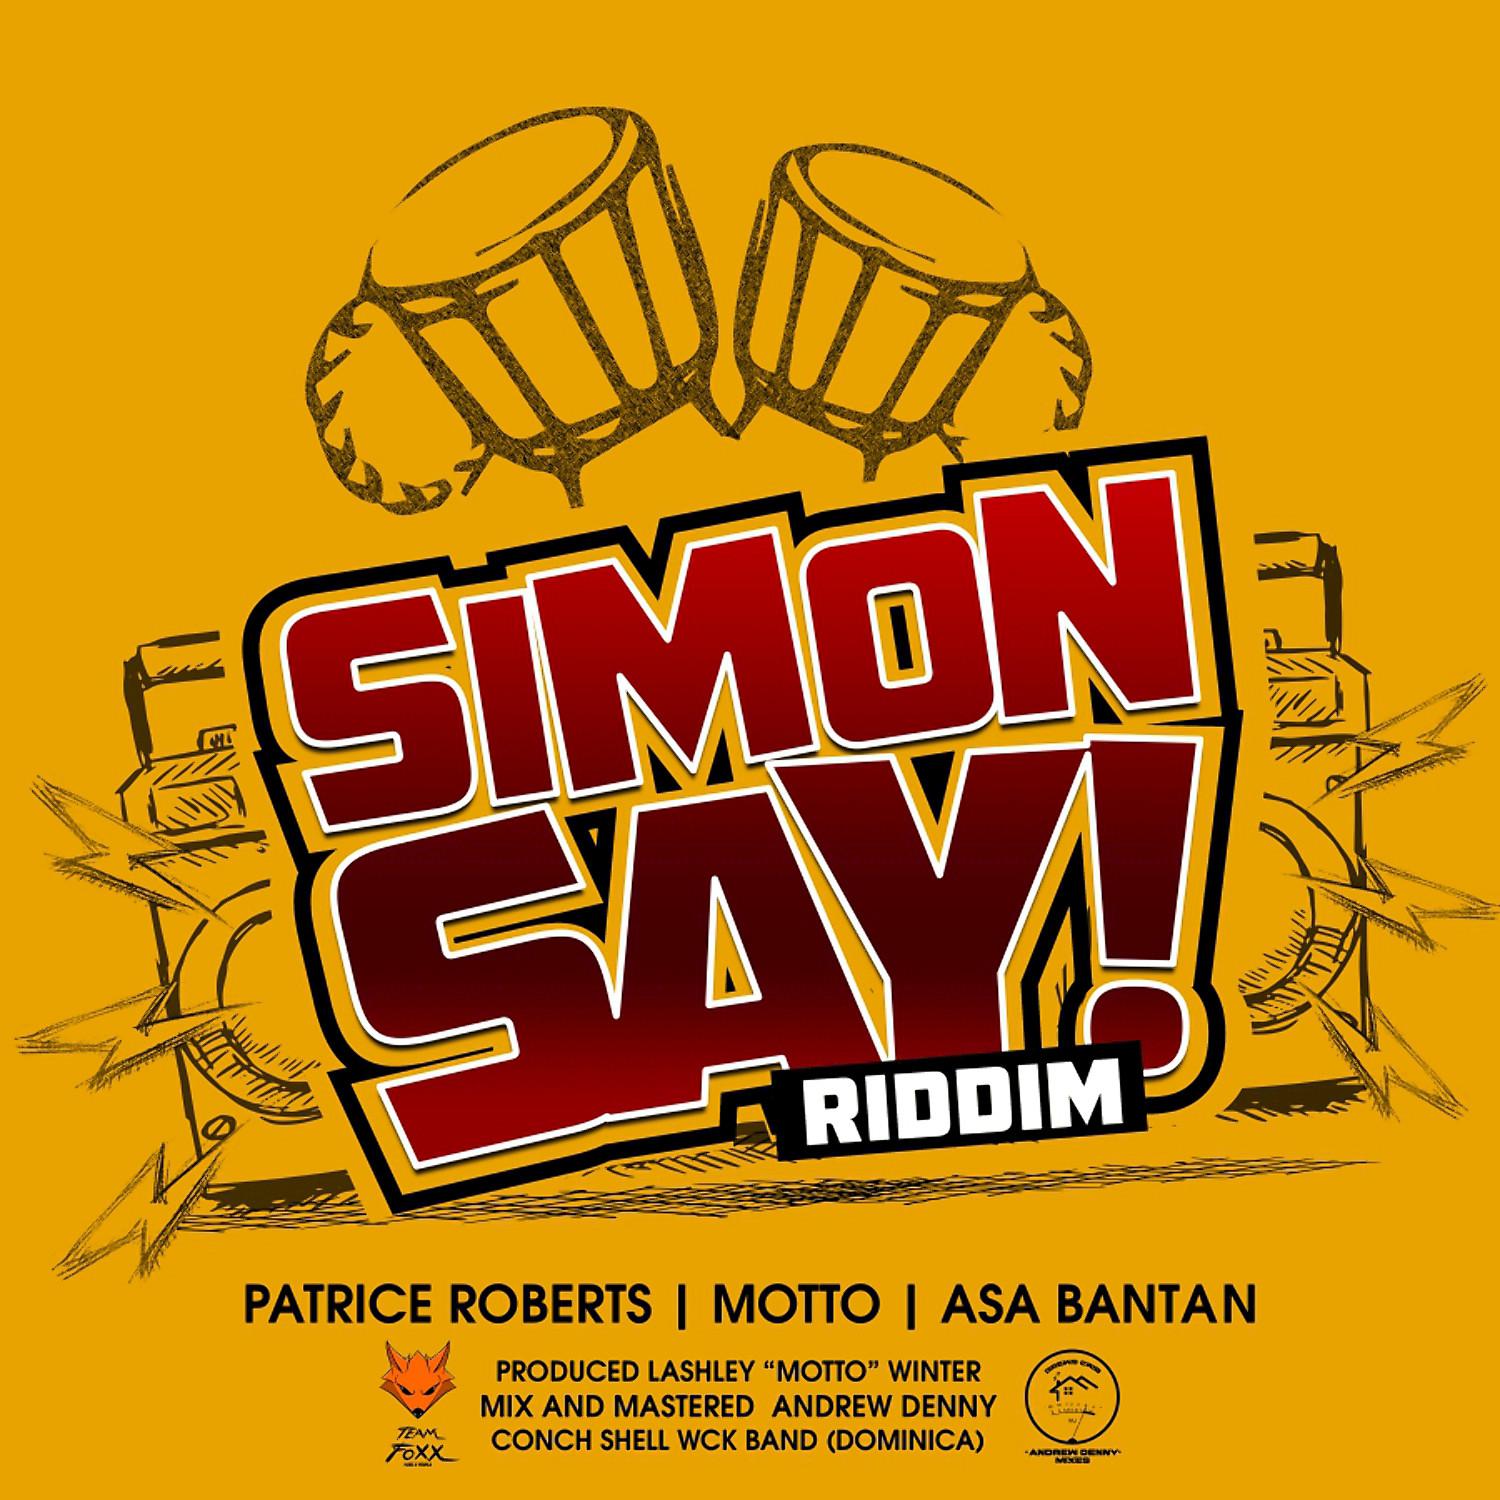 Simon Say! Riddim